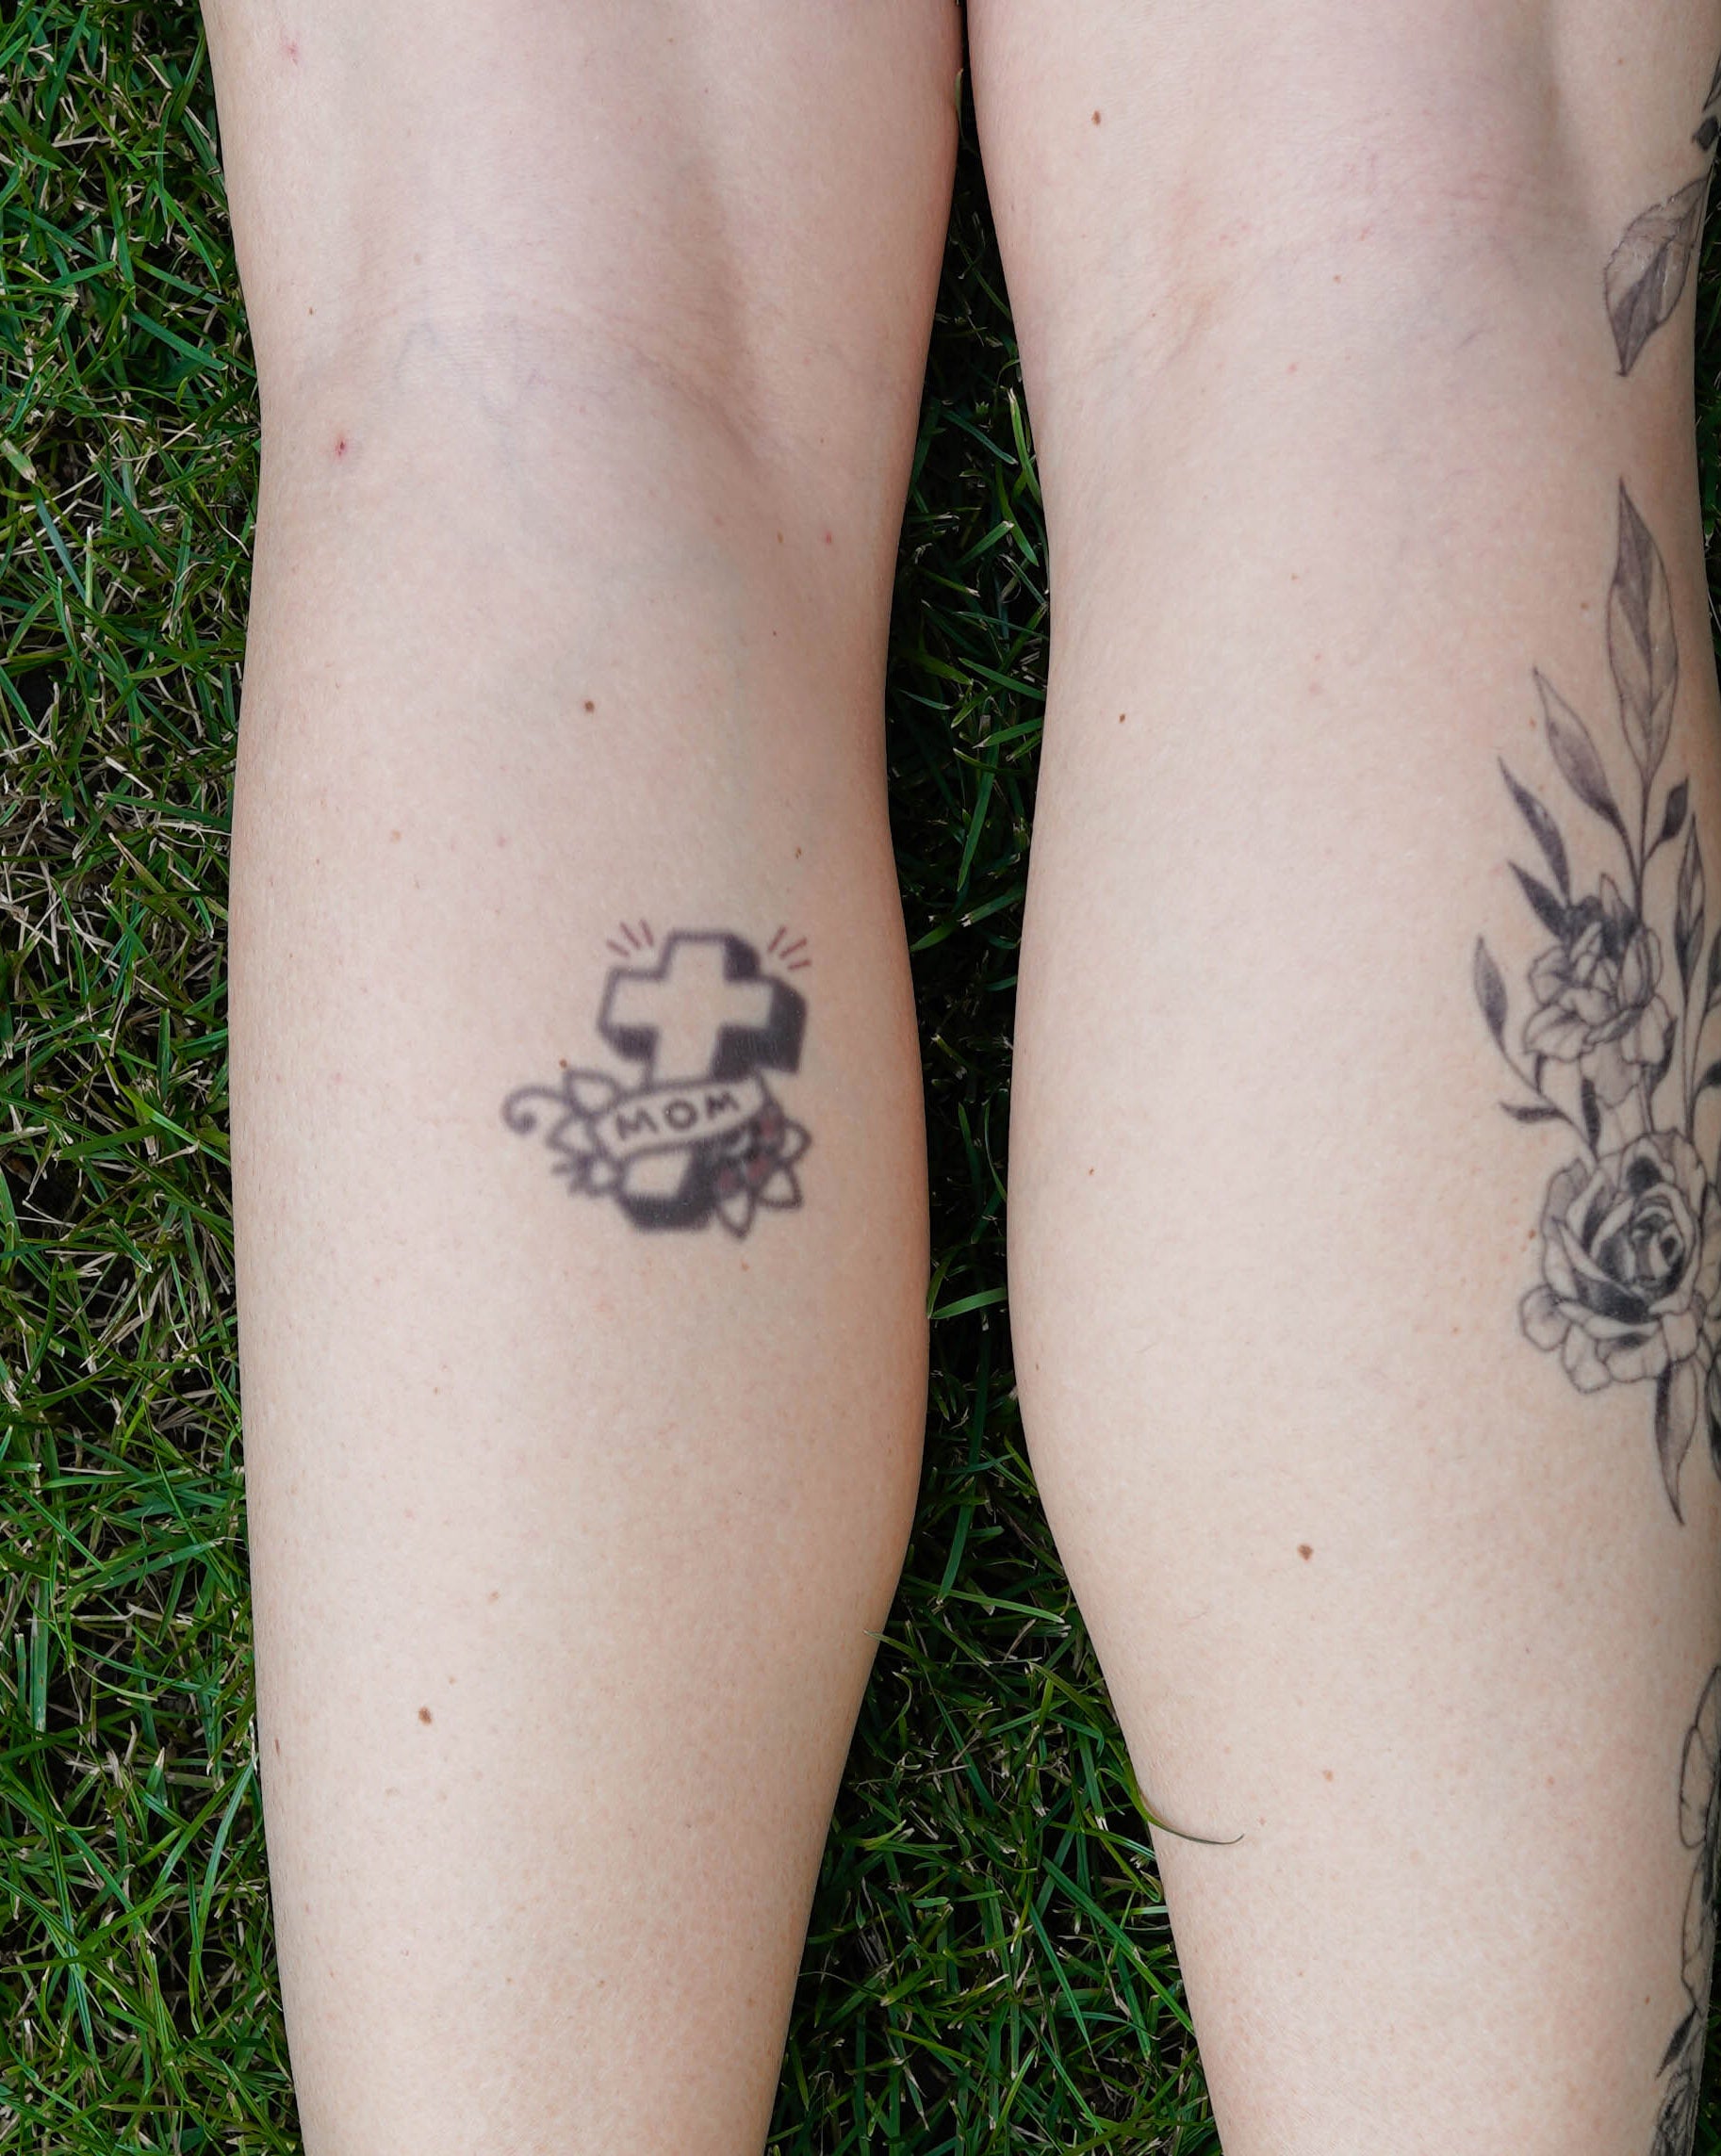 20 Simple but Powerful 'Mom' Tattoos | CafeMom.com